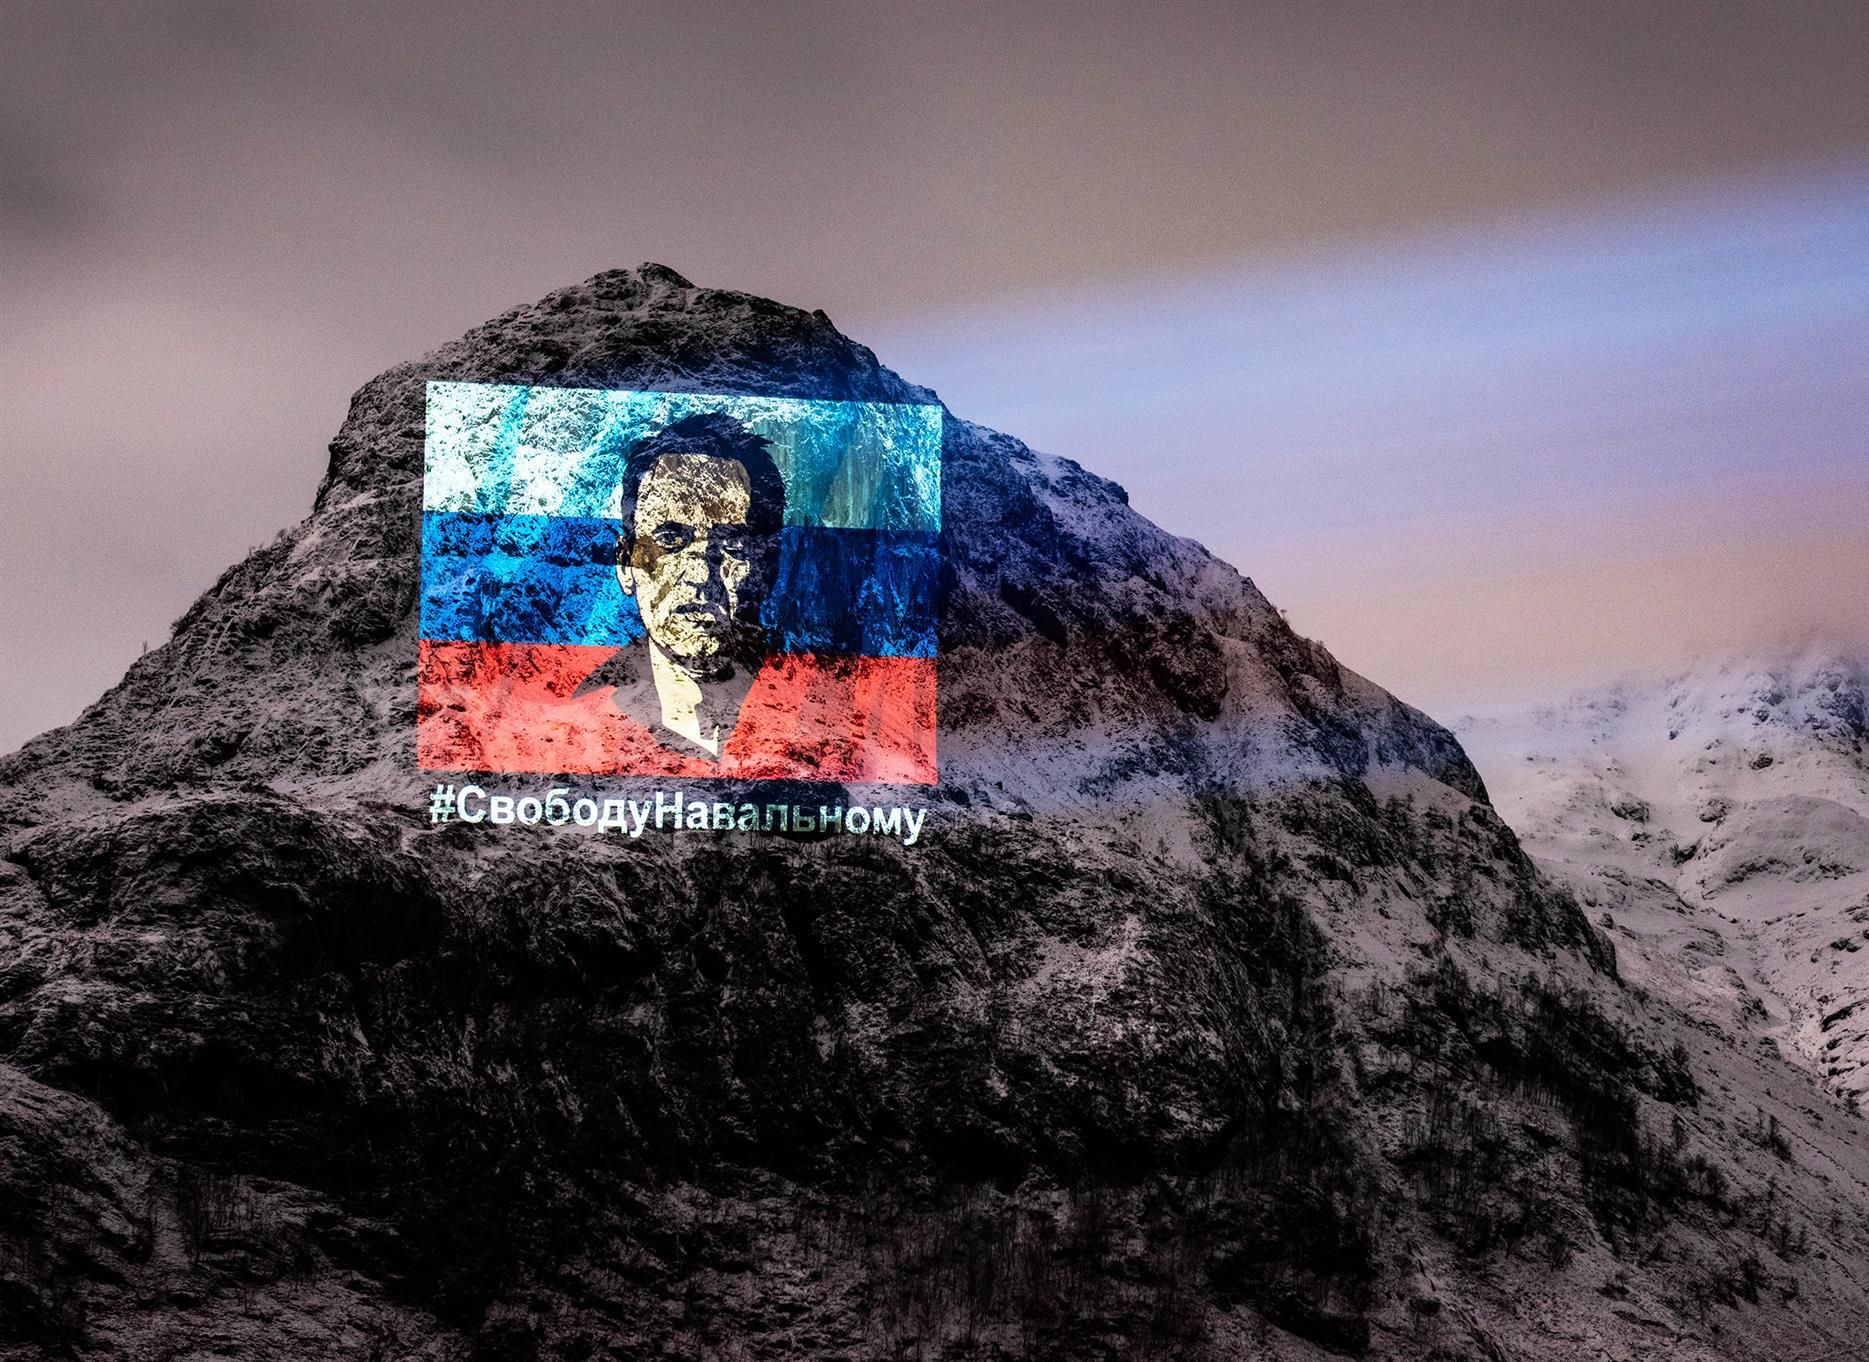 На горе в Шотландии появилось огромное изображение Навального